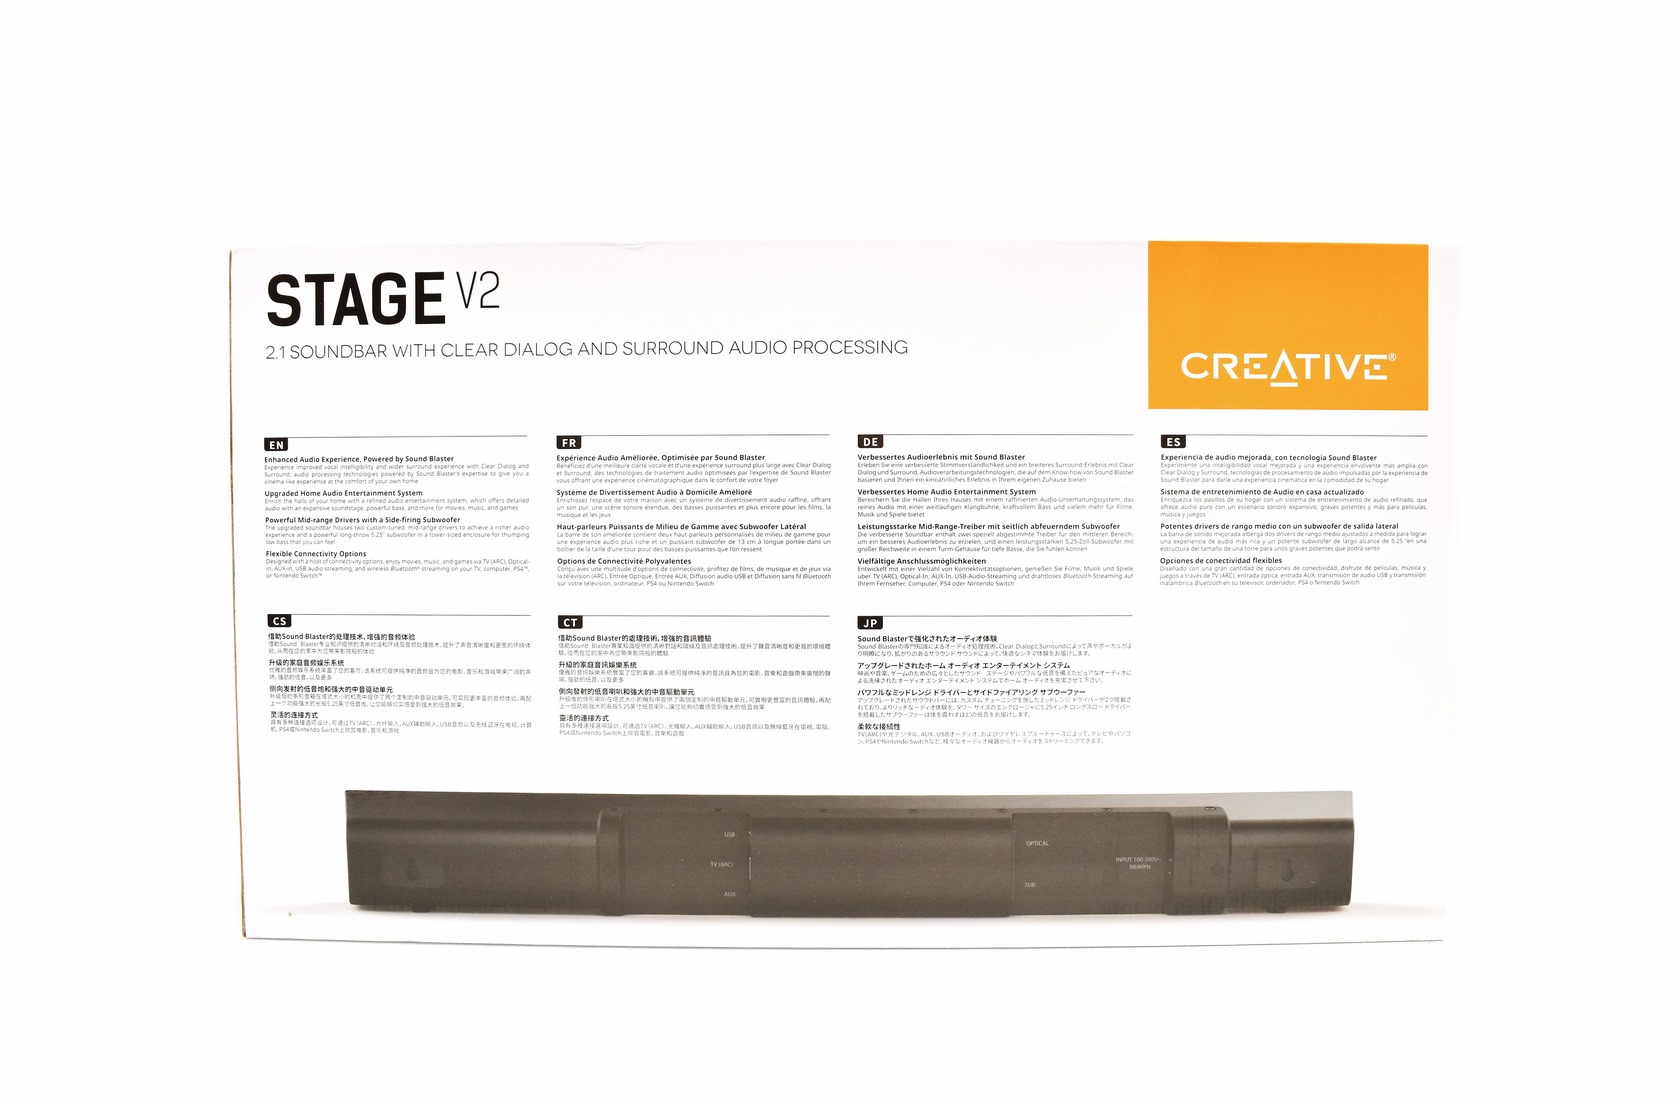 Soundbar 2.1 Review Stage V2 Creative